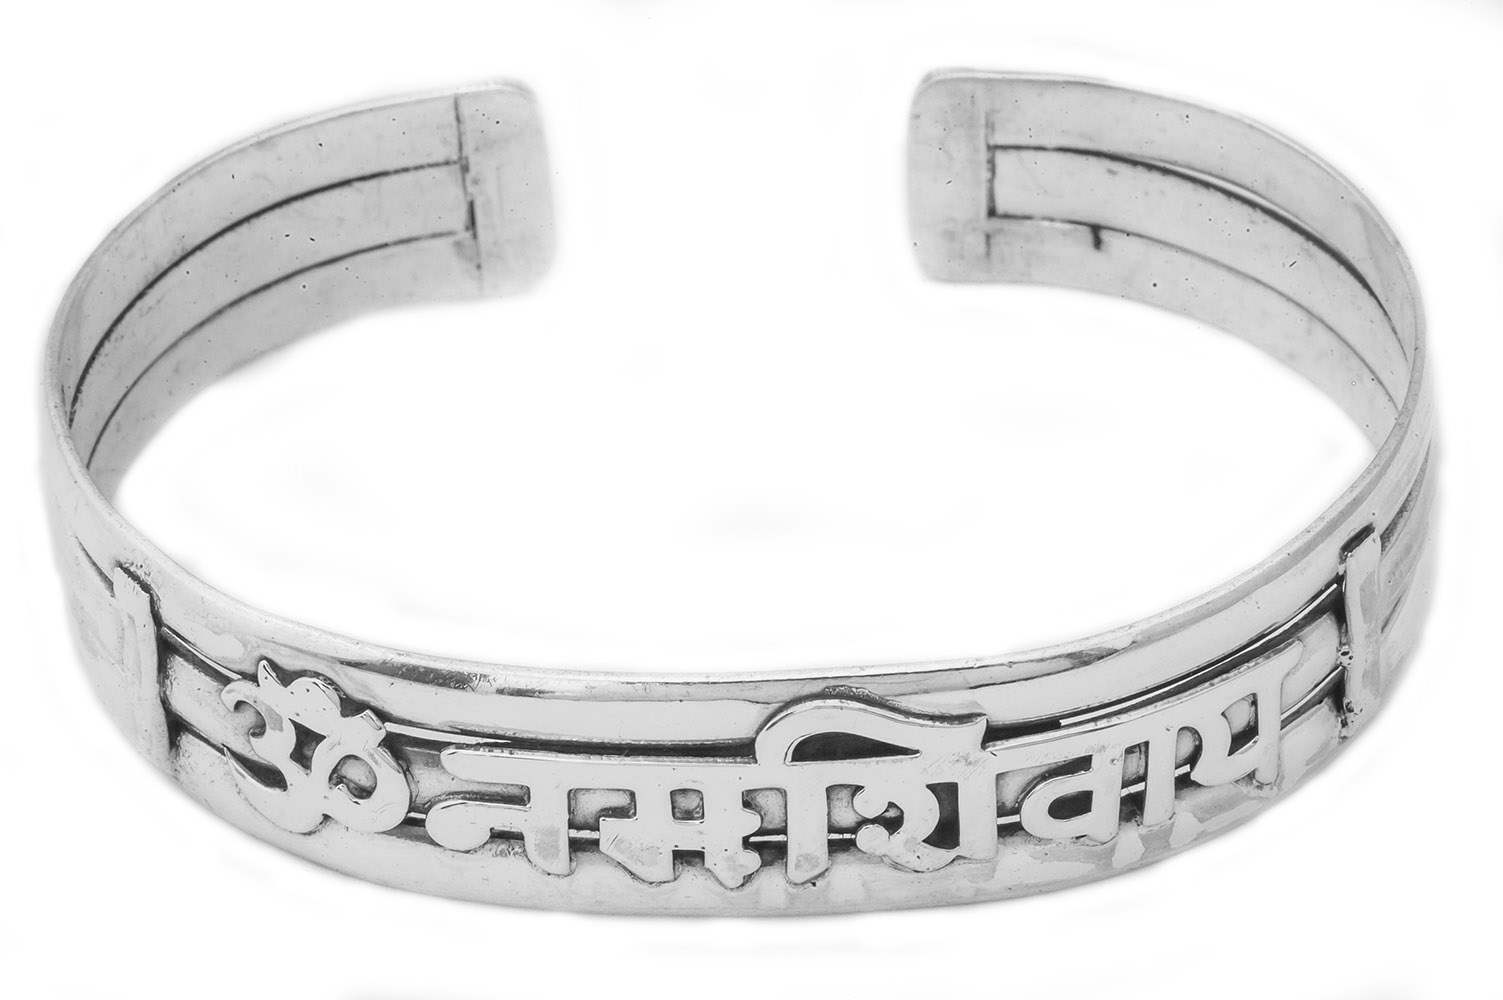 Copper Bracelet - OM Namo Shiva – BCandle